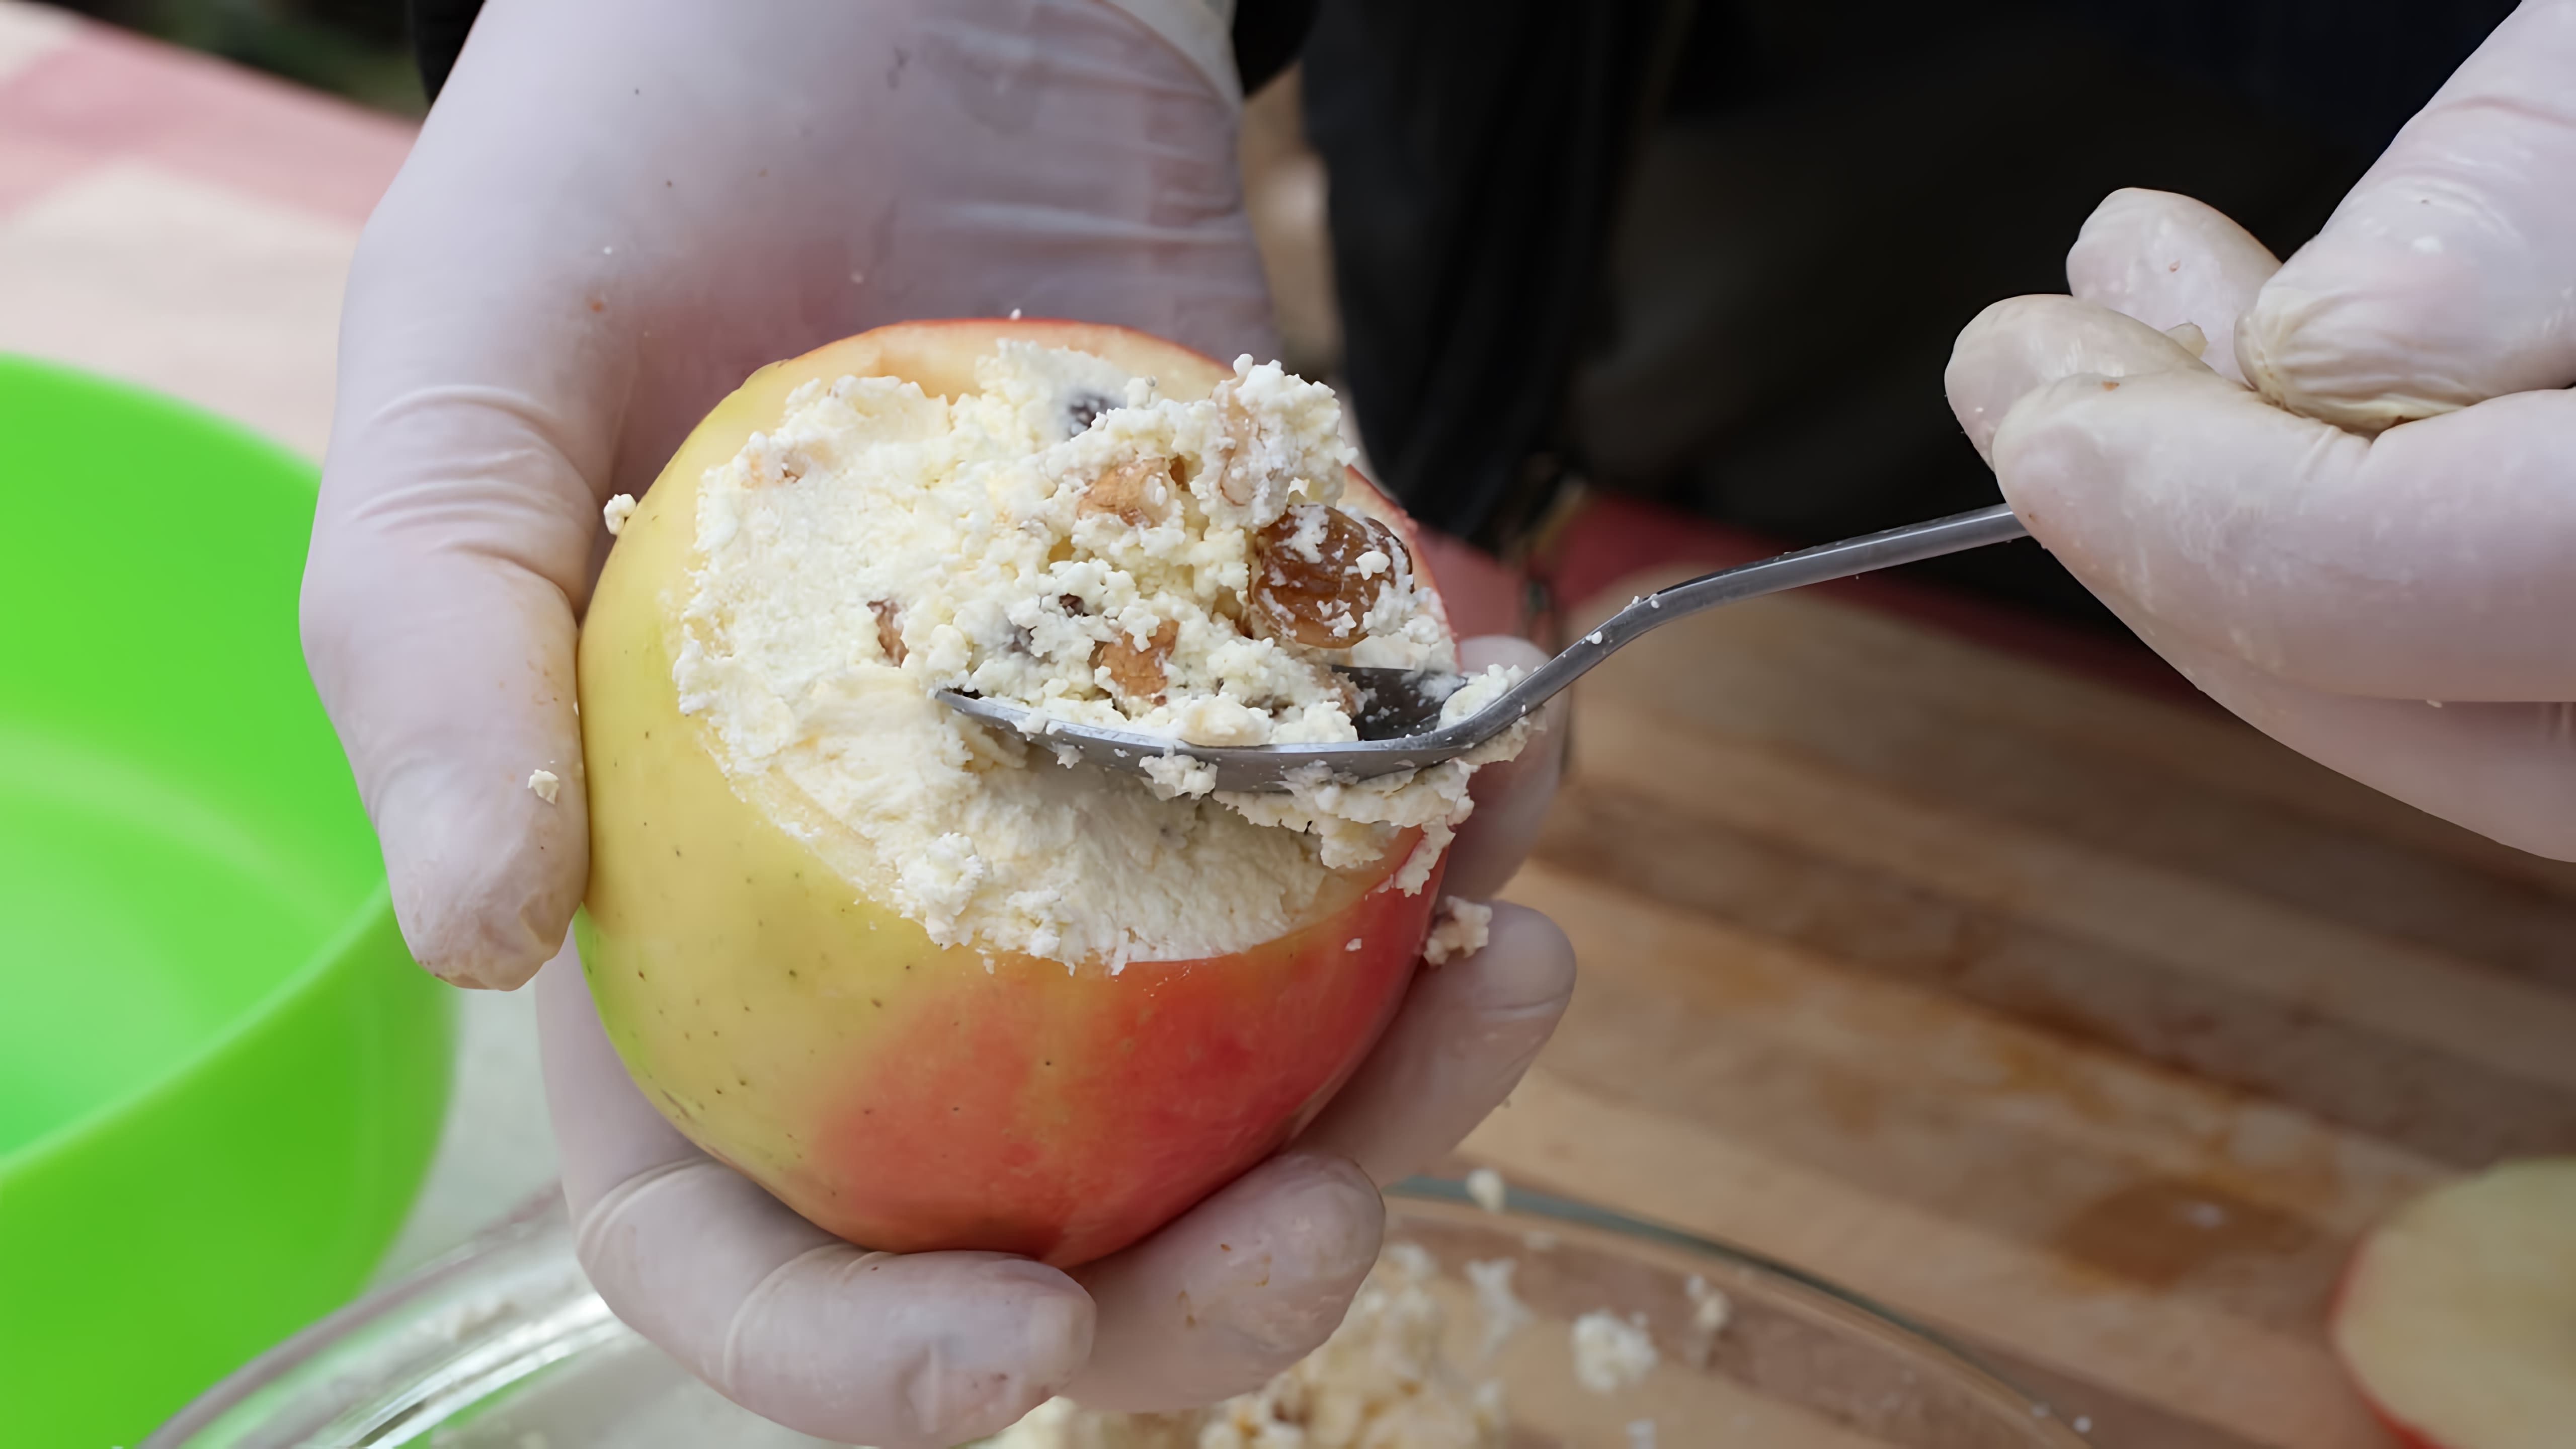 Печеные яблоки с начинкой из творога, орехов, сухофруктов и меда - это полезный и вкусный десерт. В этом видео мы... 